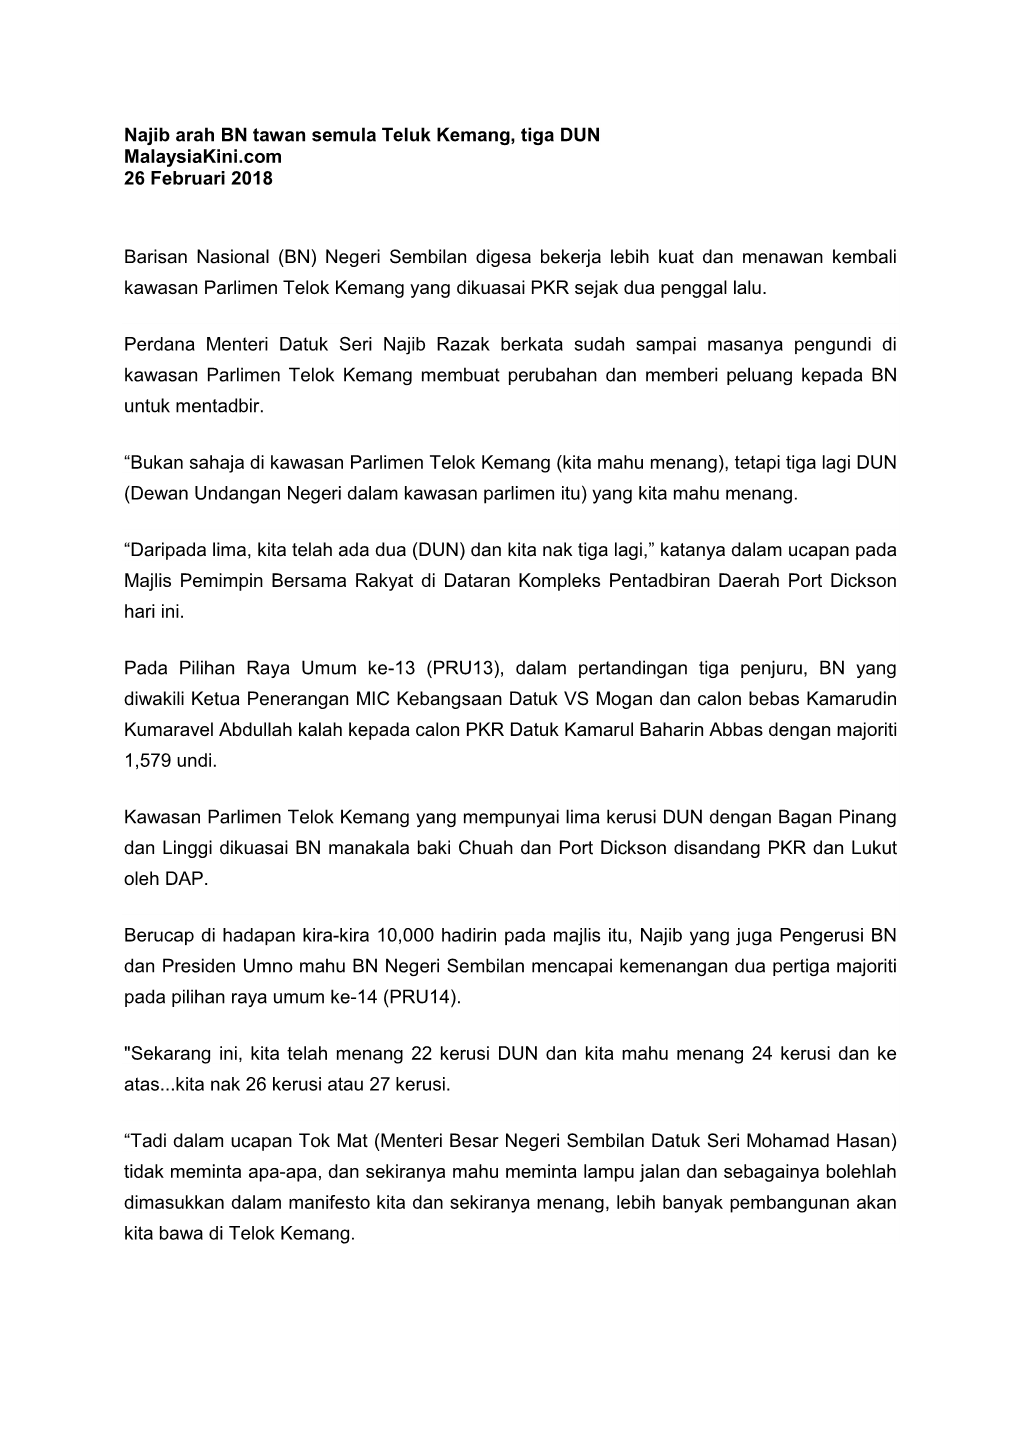 Najib Arah BN Tawan Semula Teluk Kemang, Tiga DUN Malaysiakini.Com 26 Februari 2018 Barisan Nasional (BN) Negeri Sembilan Digesa